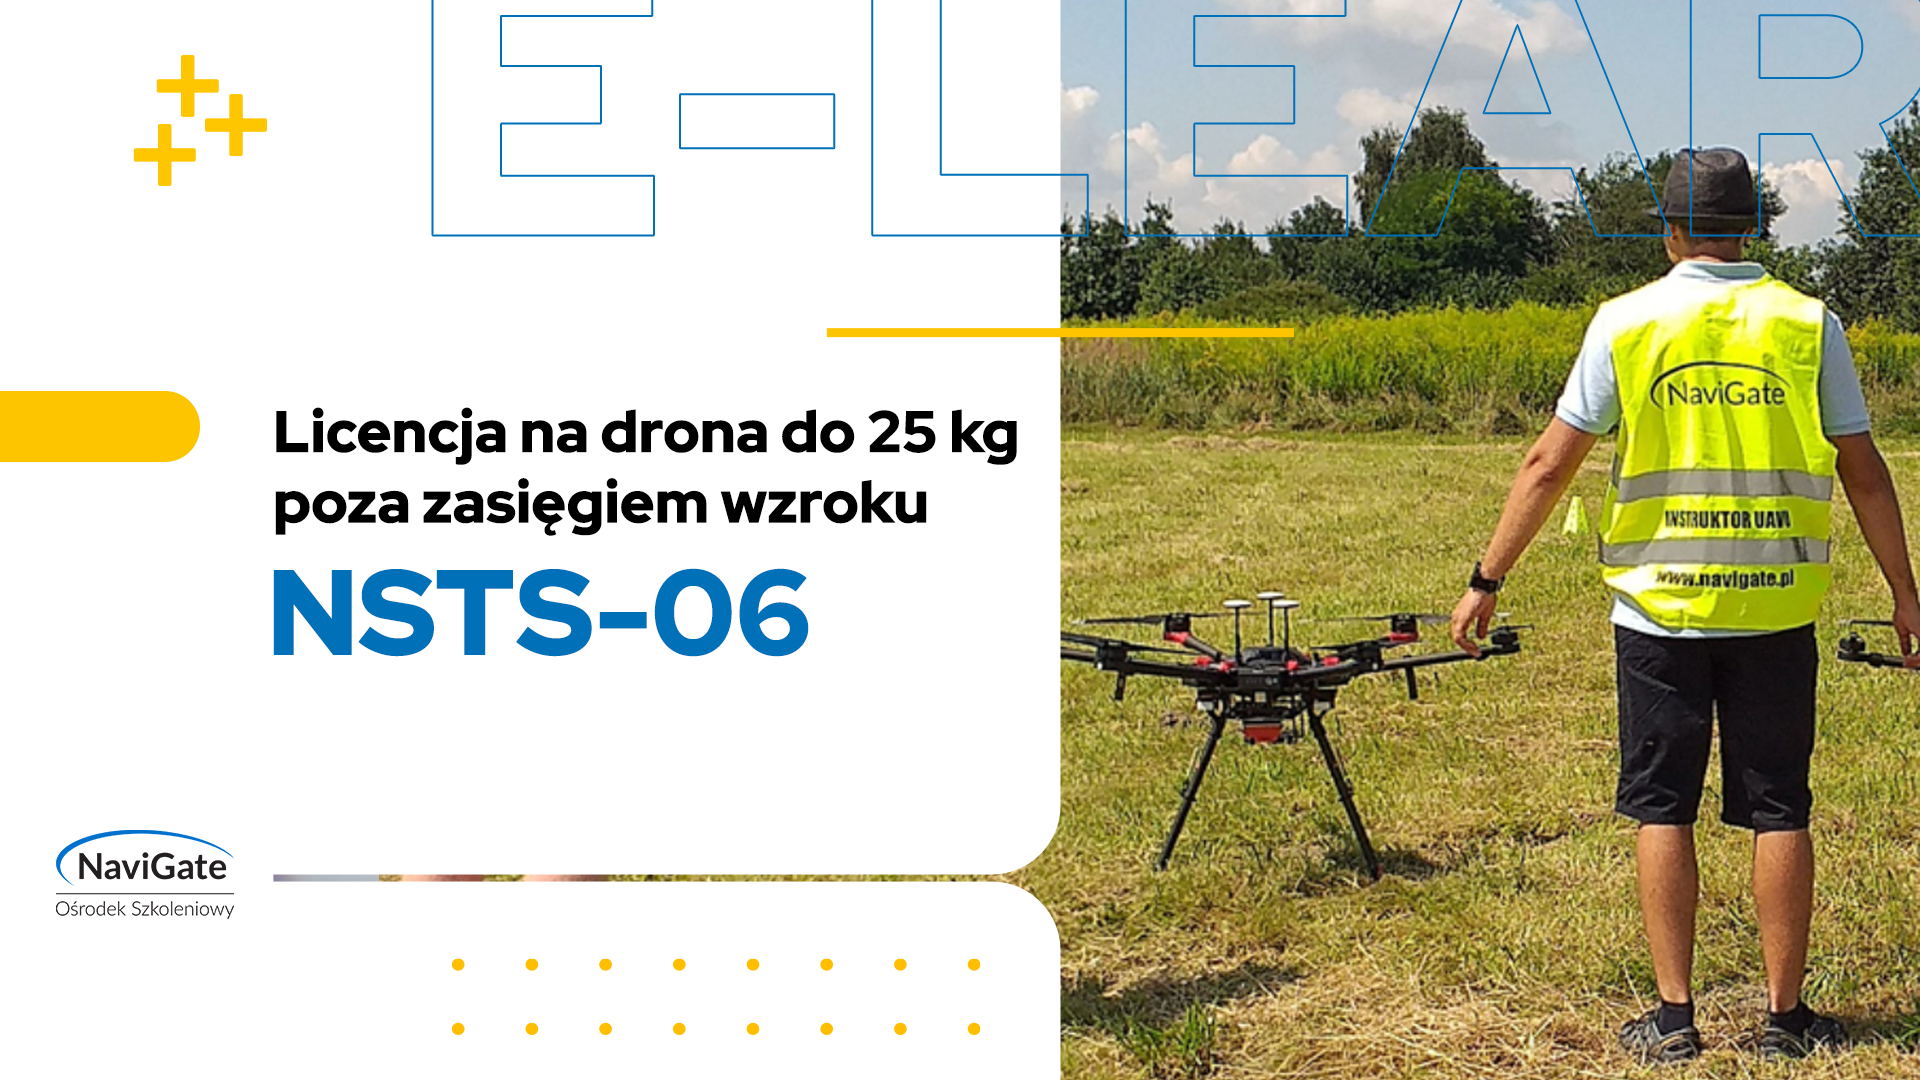 NSTS-06 – licencja na drona do 25 kg poza zasięgiem wzroku (BVLOS)